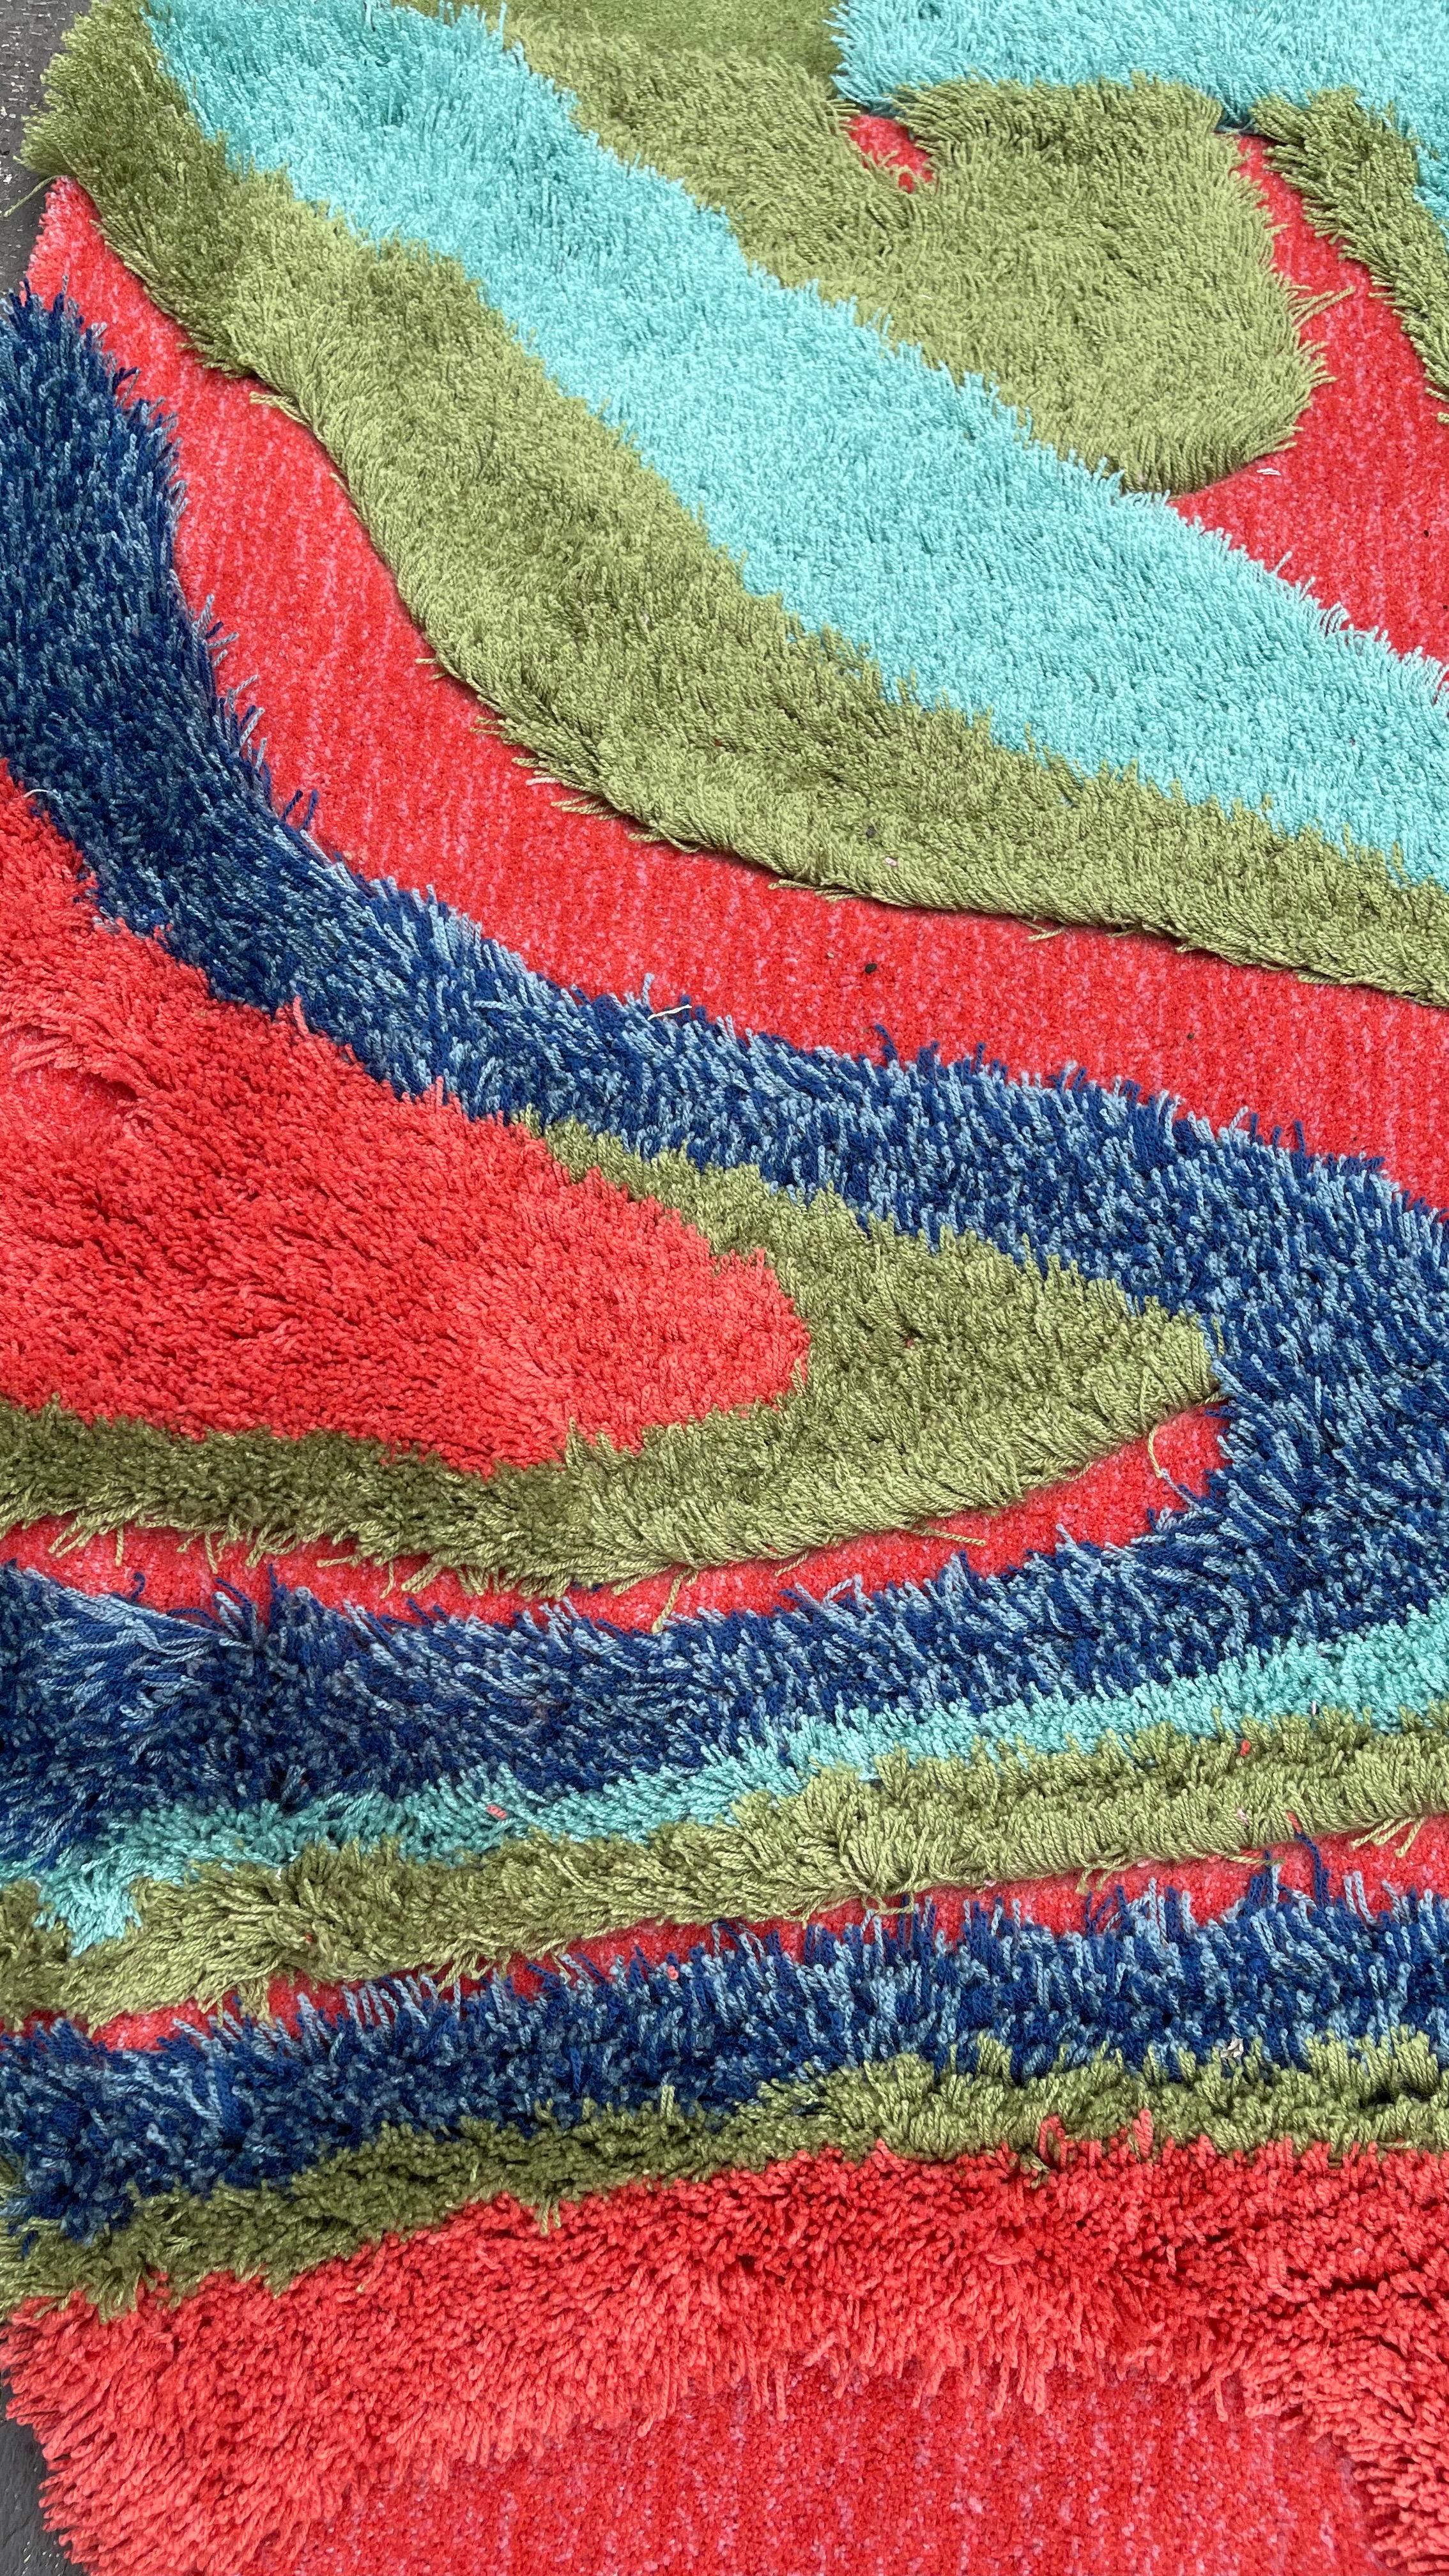 Tapis de forme irrégulière de style moderne aux couleurs pop de RAG HOME

Les produits de RAG HOME sont des tapis et des moquettes tuftés à la main, inspirés par l'amour de Rannisa Soraya, fondatrice et directrice créative de la marque, pour les